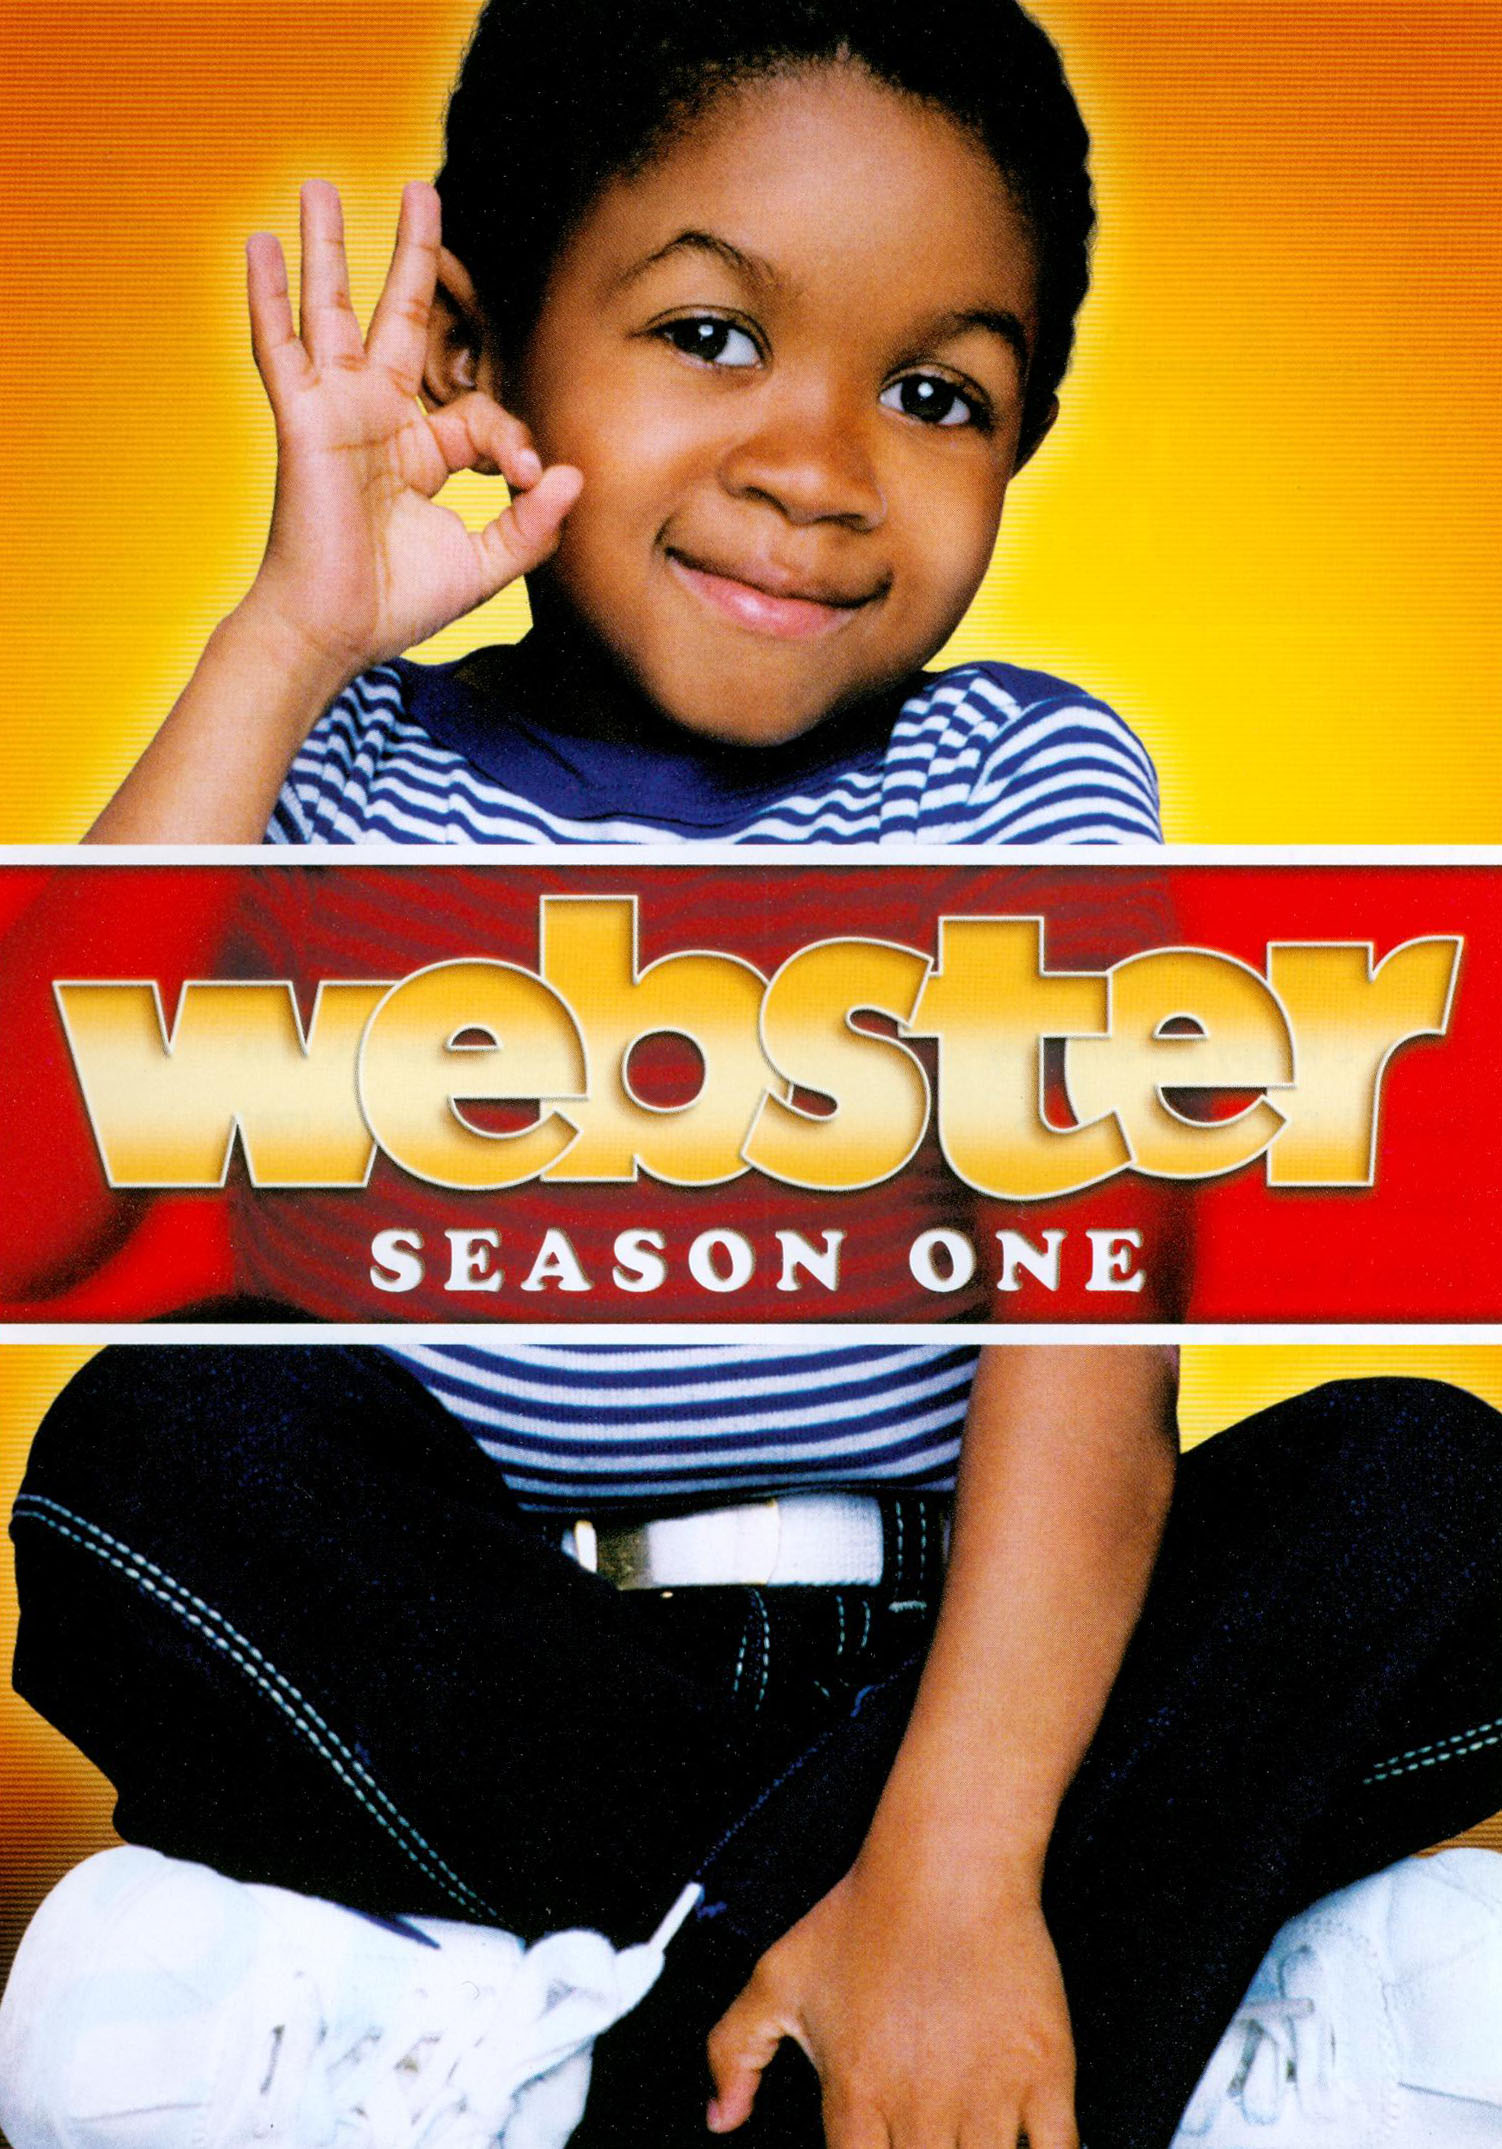 Webster: Season One [3 Discs] [DVD]